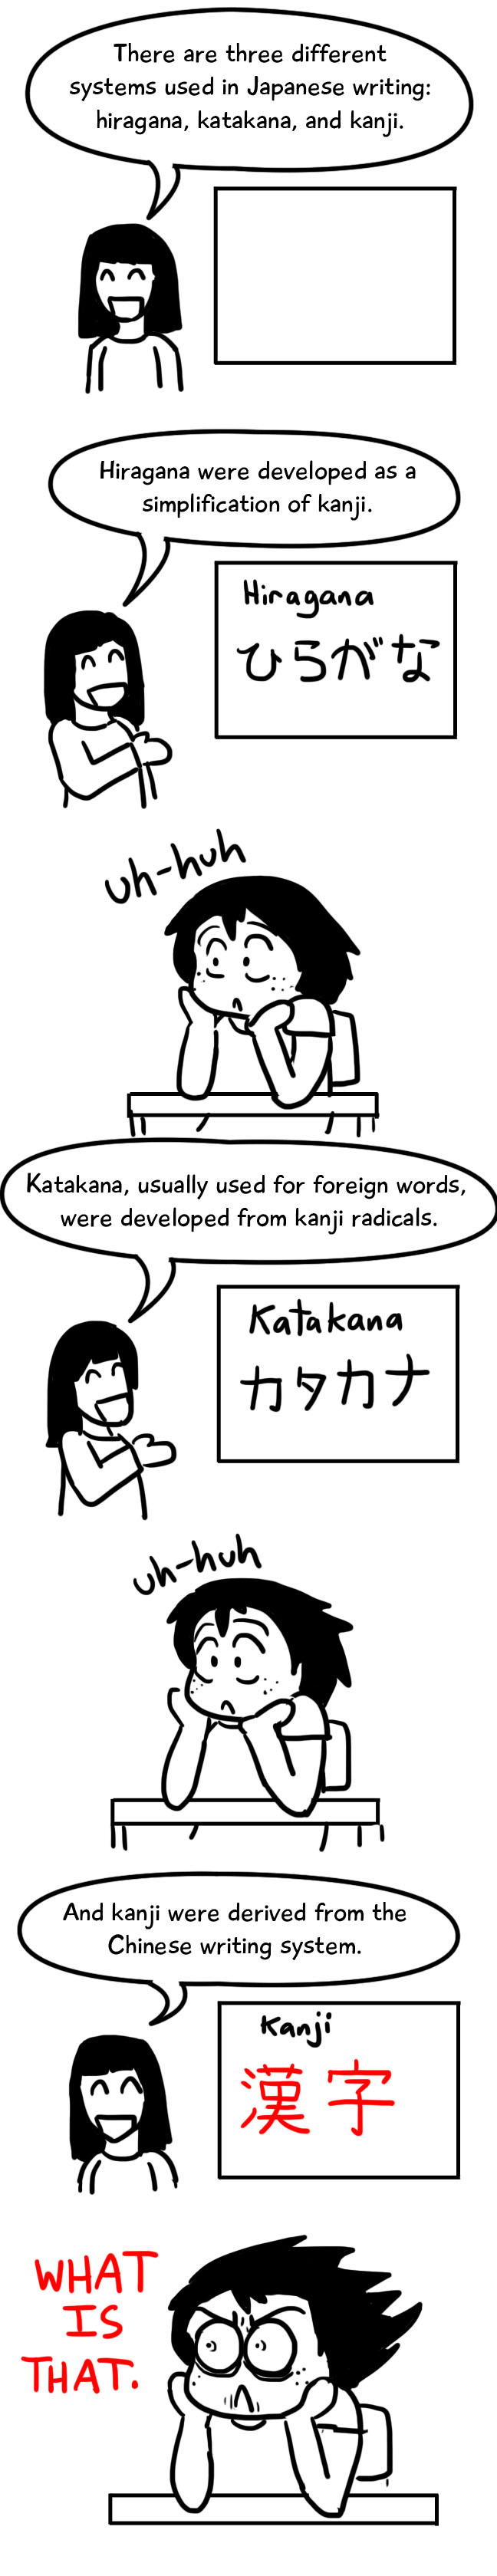 kanji image 1